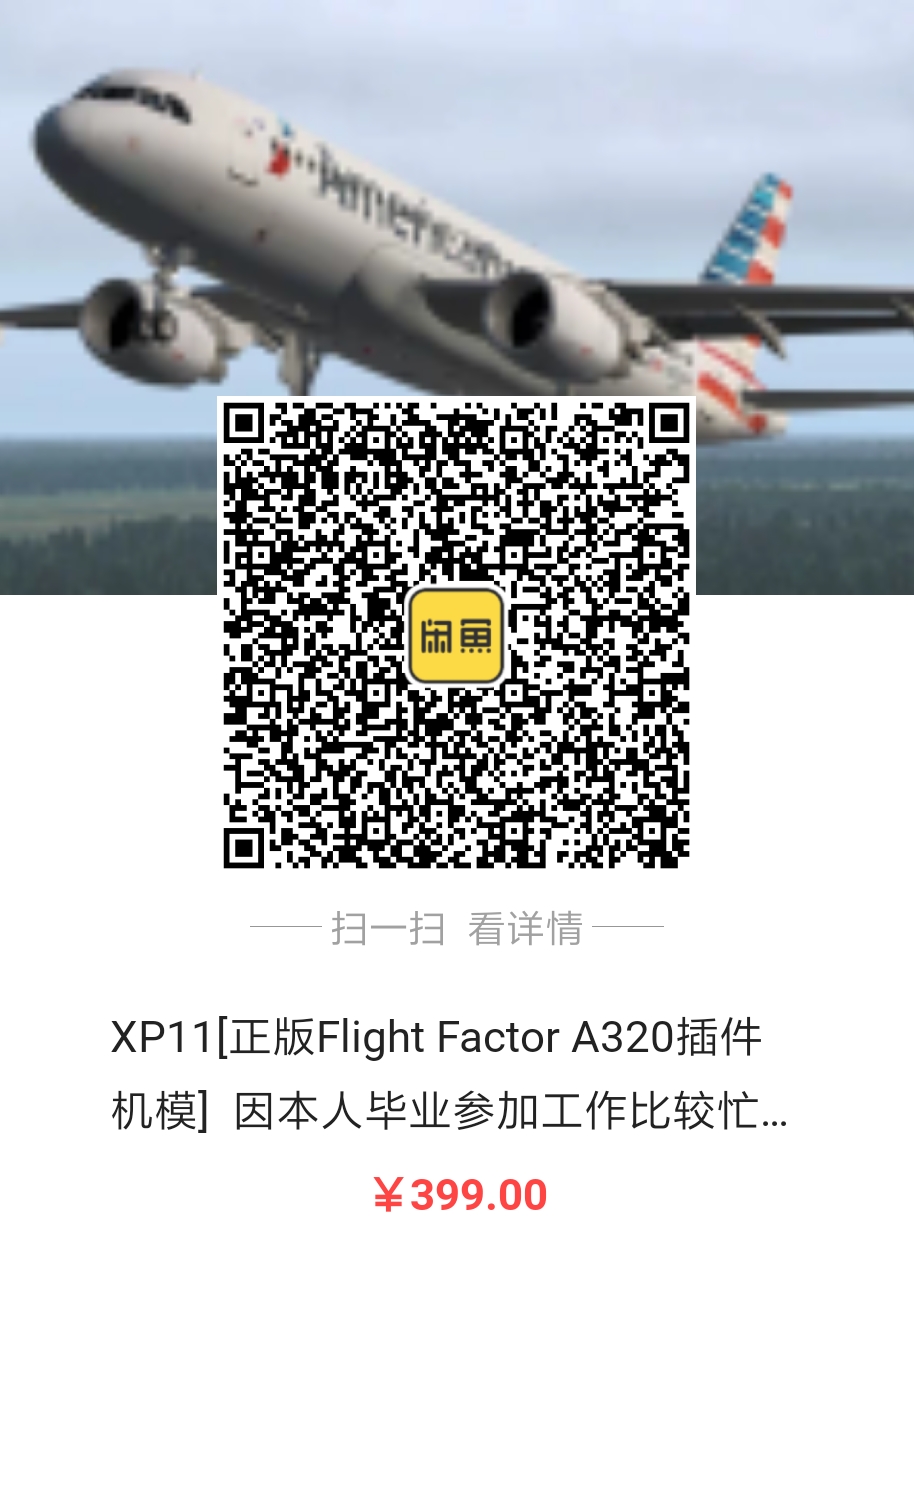 出售Flight Factor A320正版激活码，因毕业工作忙-8567 